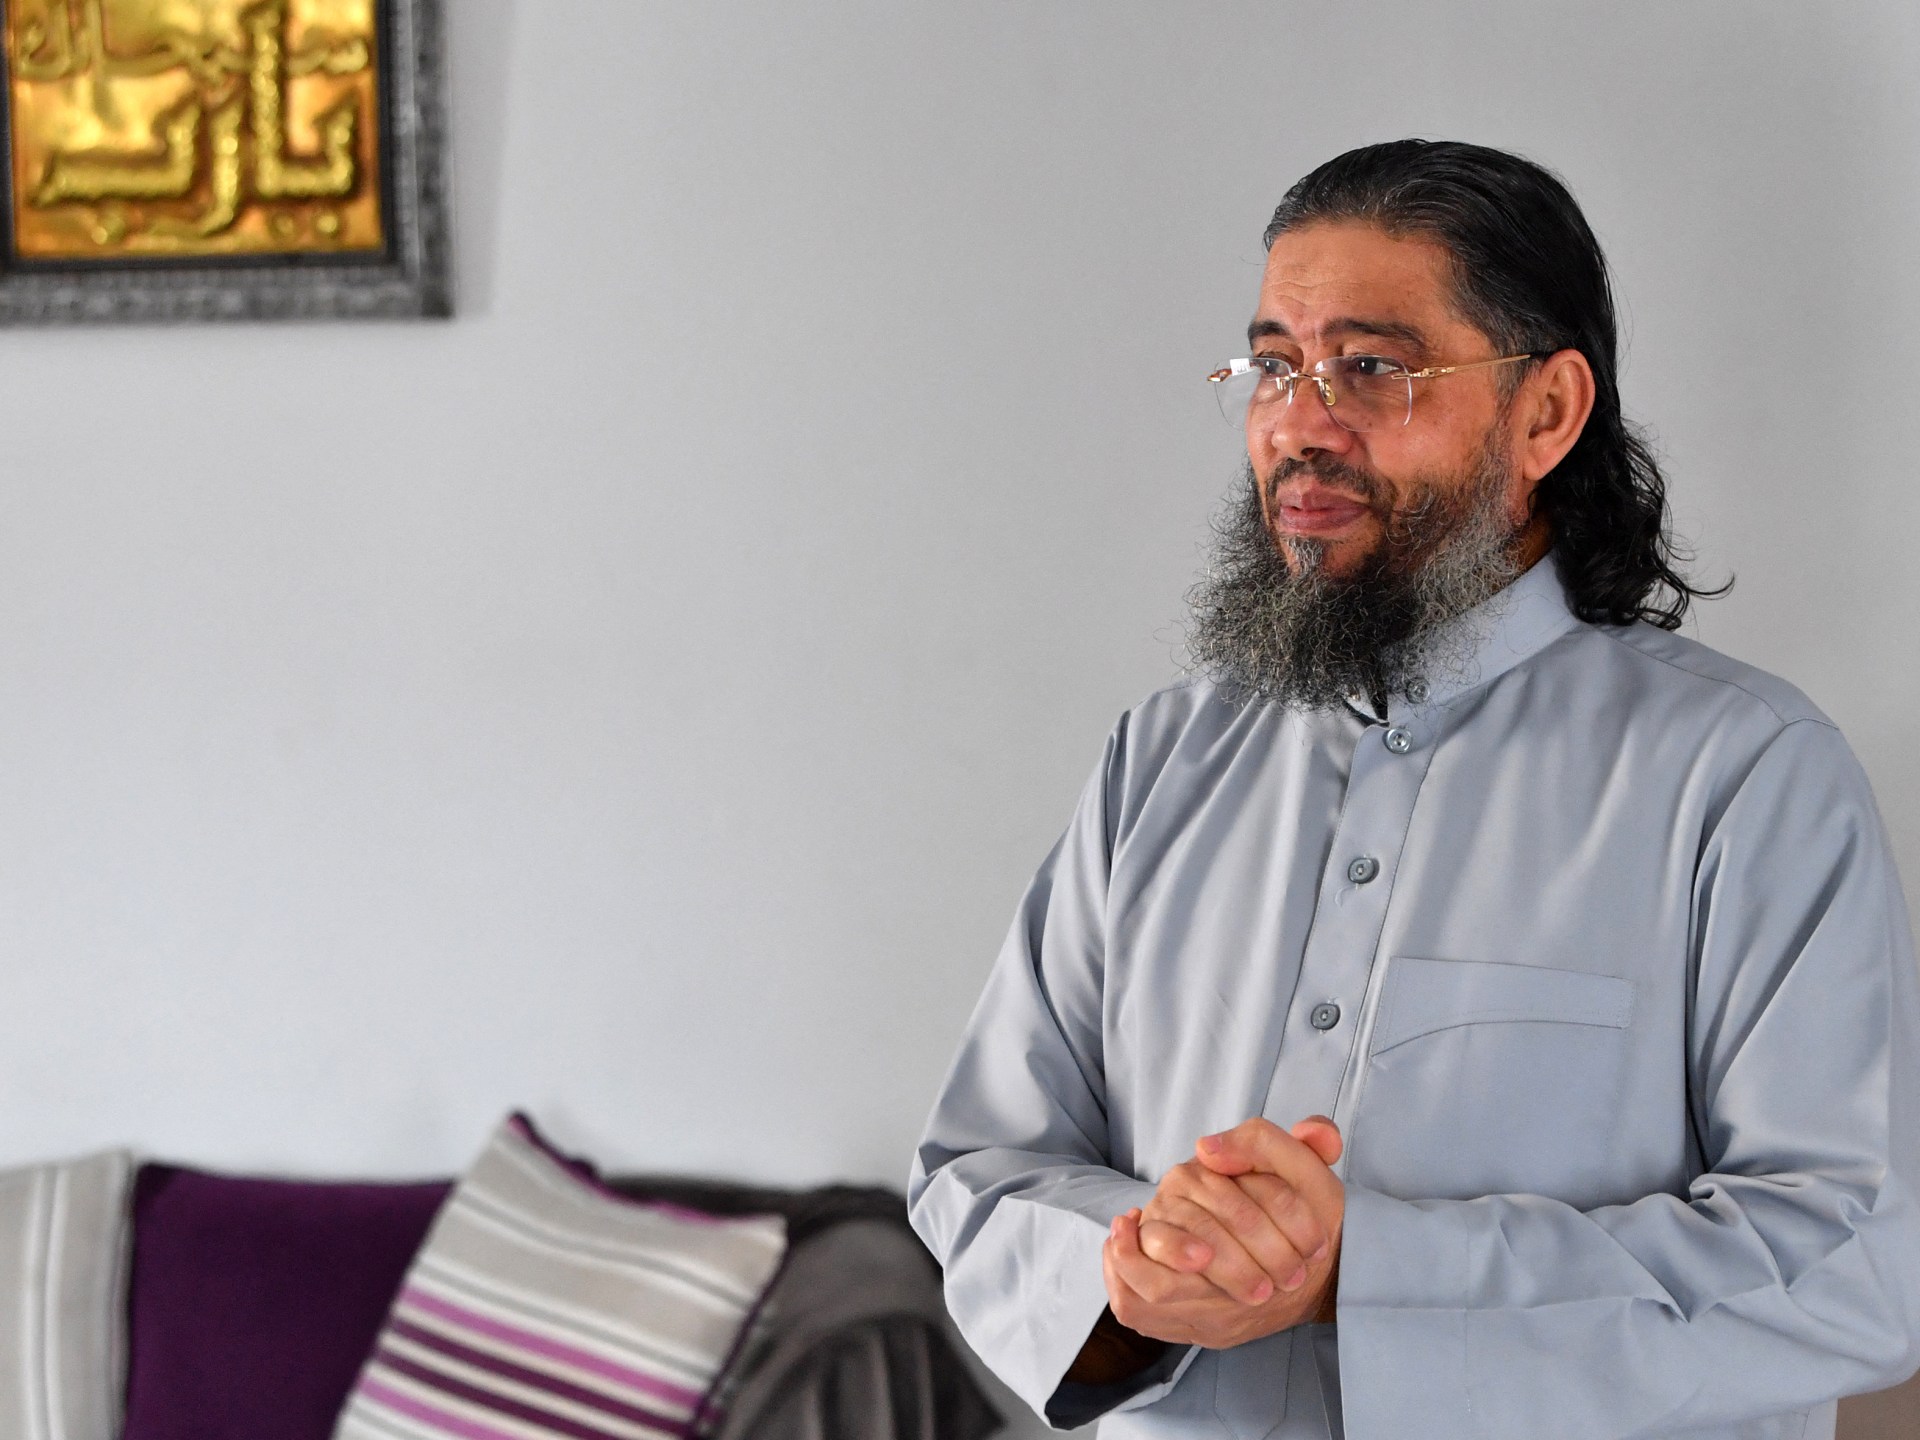 الإمام التونسي المرّحل يلجأ للقضاء للعودة إلى عائلته في فرنسا | أخبار – البوكس نيوز